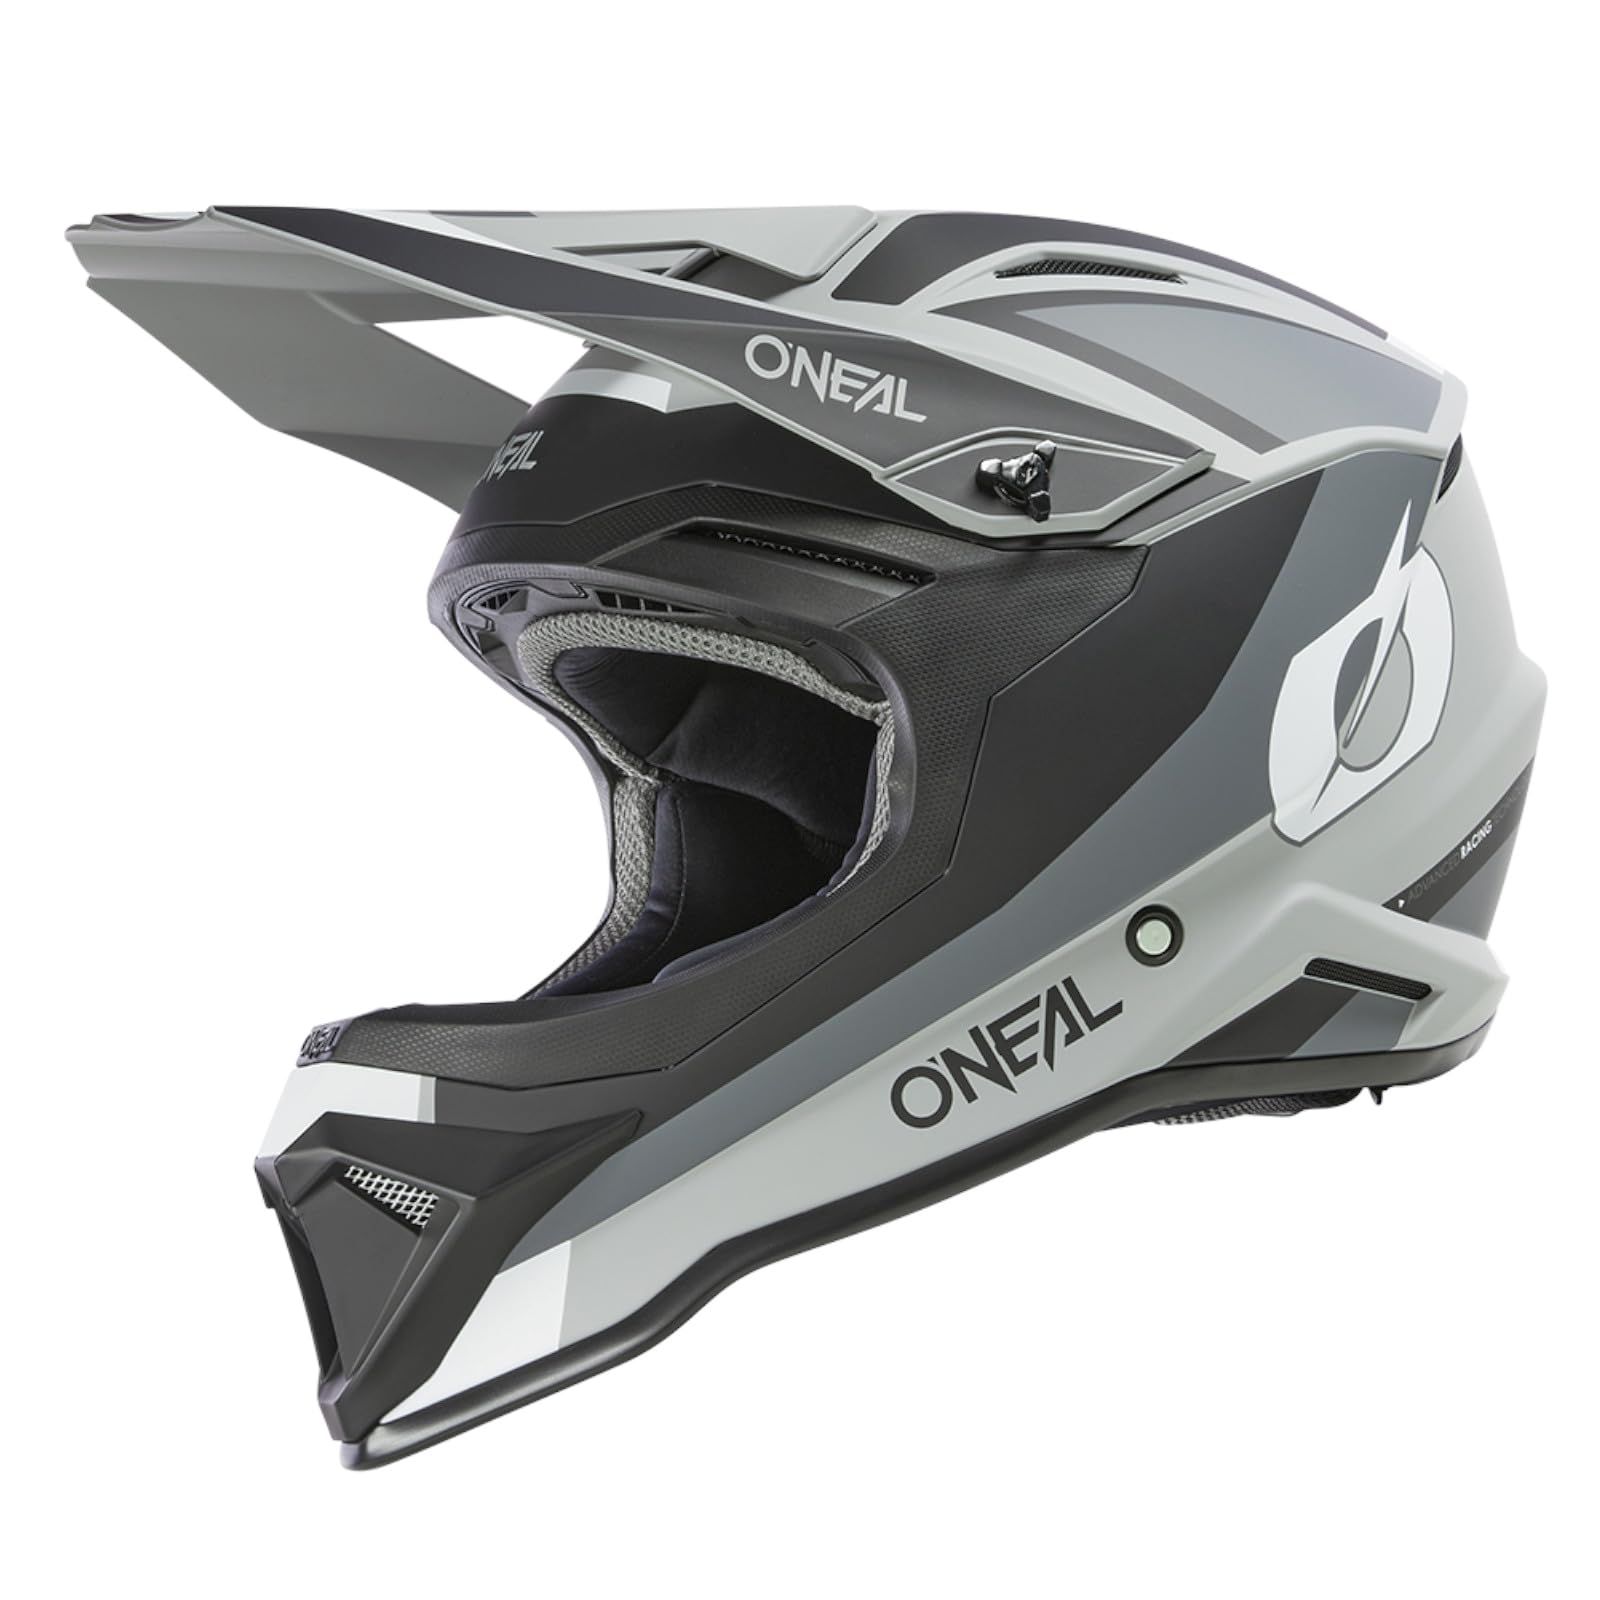 O'NEAL | Motocross-Helm | MX Enduro | ABS-Schale, Konfort-Innenfutter, Lüftungsöffnungen für optimale Belüftung & Kühlung | 1SRS Helmet Stream V.24 | Erwachsene | Schwarz Grau | Größe S von O'NEAL